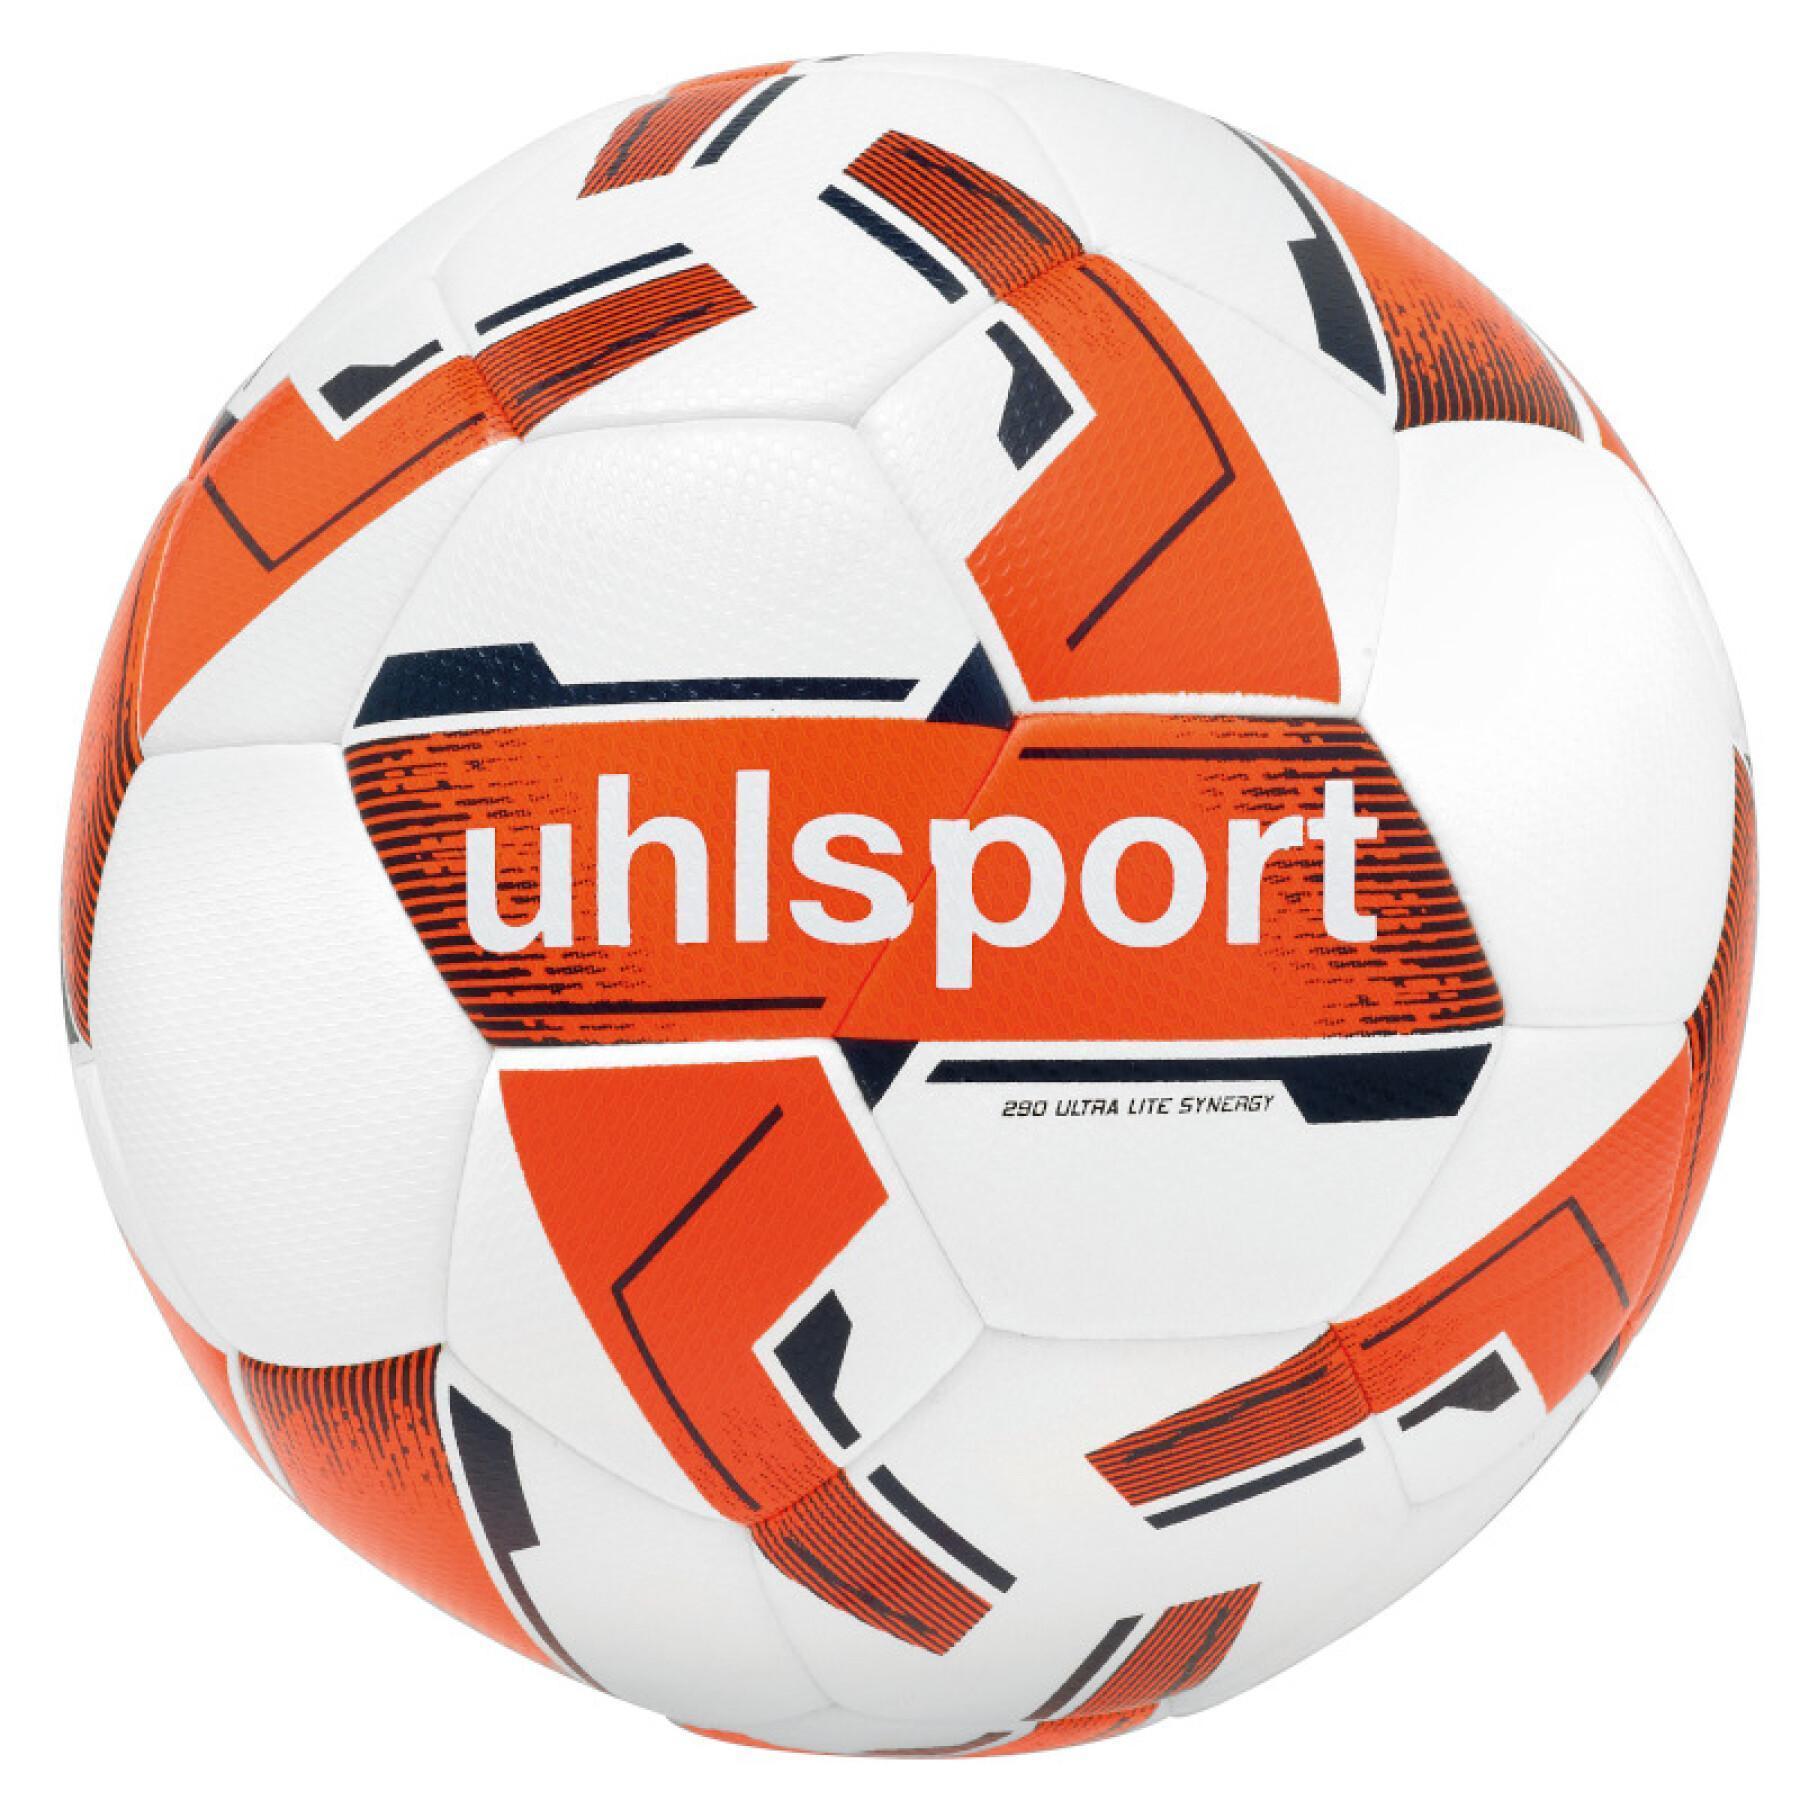 Children's Uhlsport Soccer Ball 